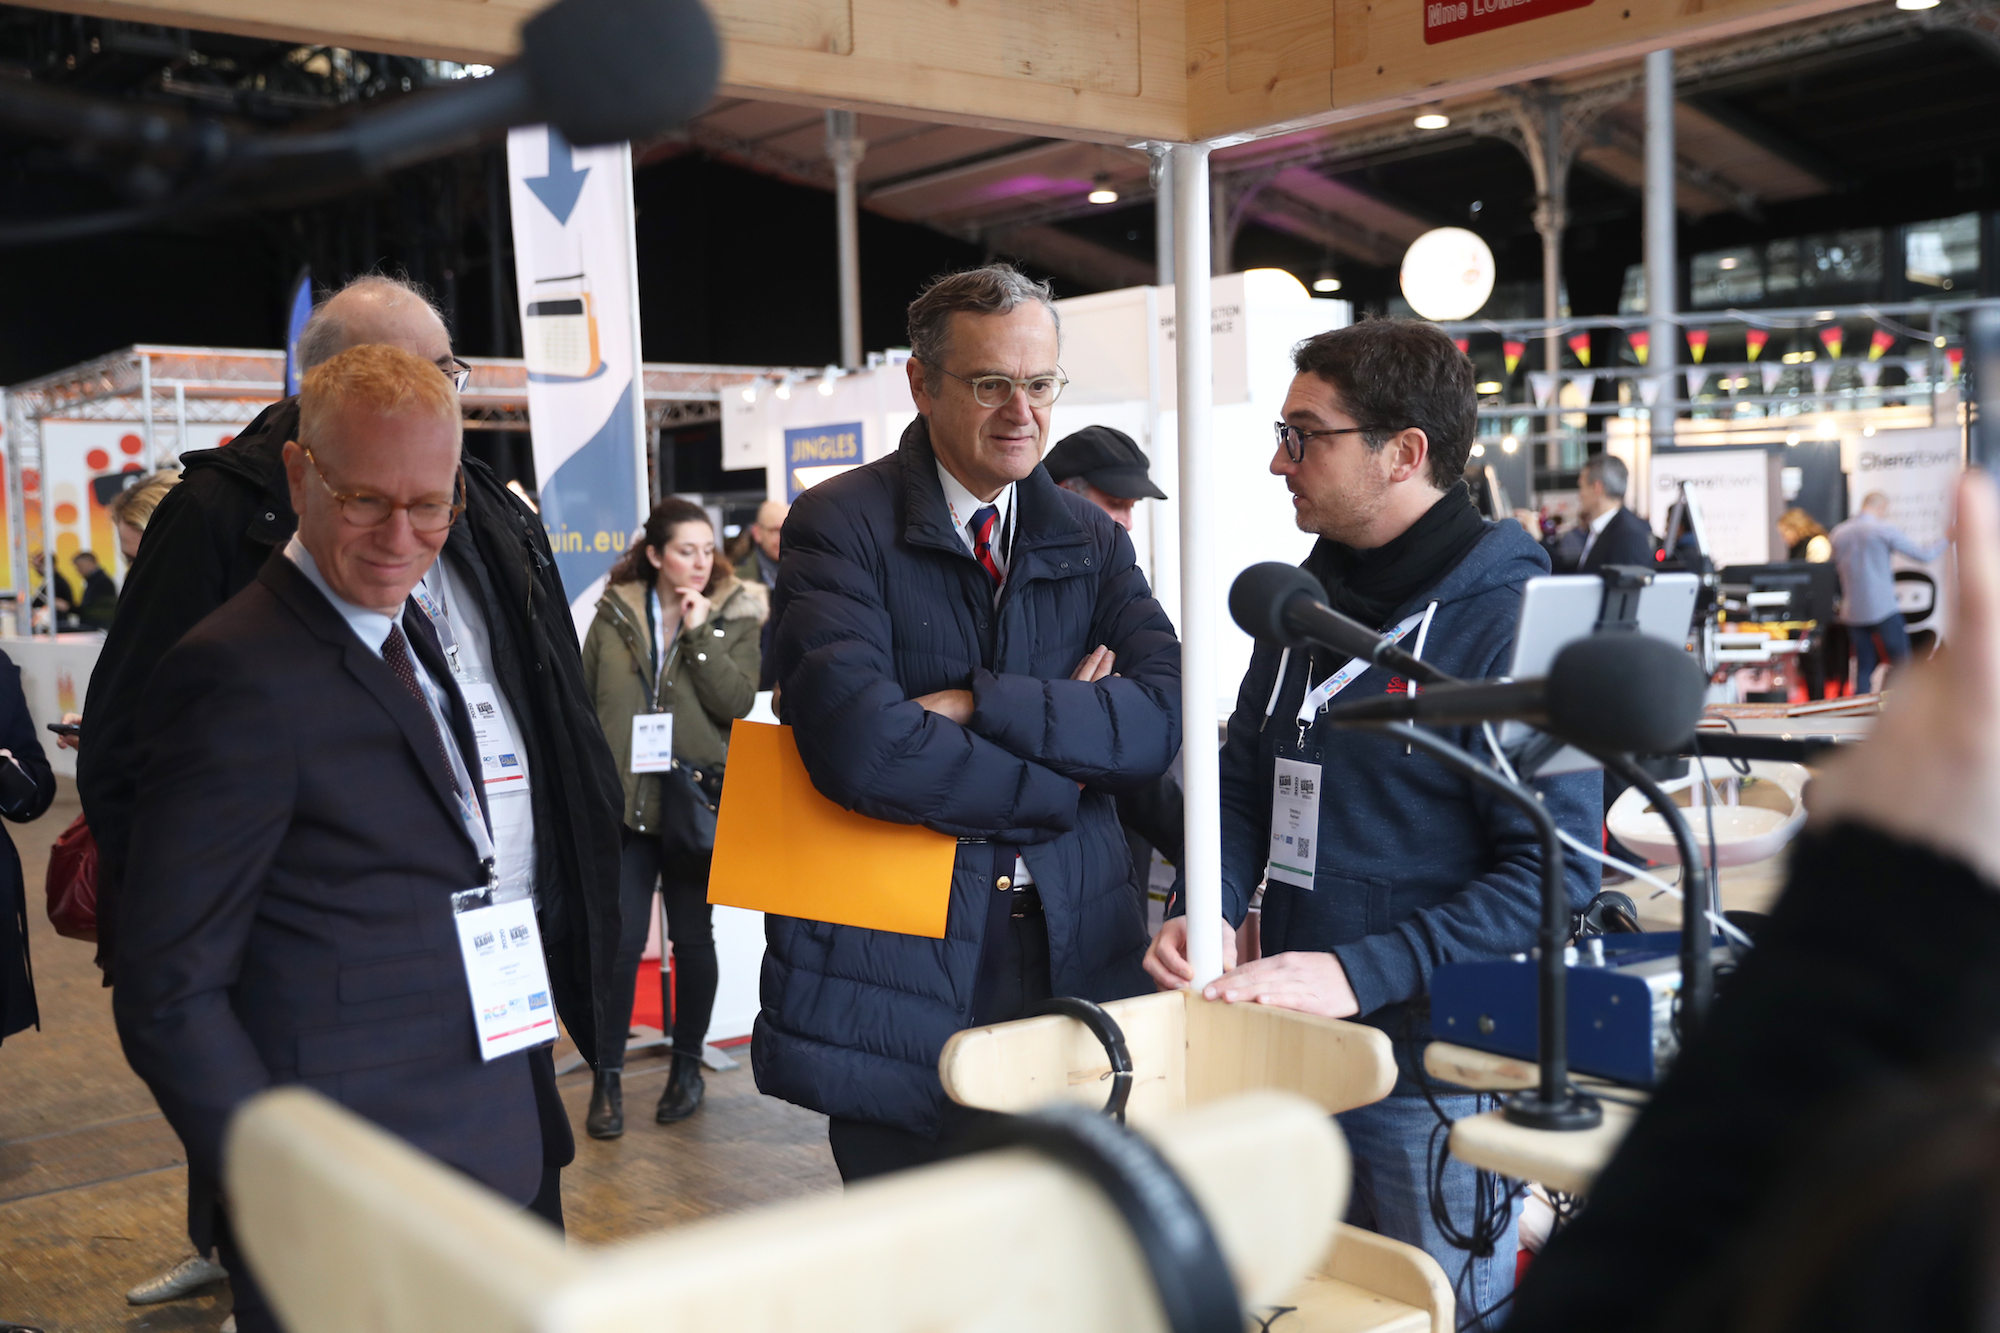 Roch-Olivier Masitre, Président du CSA, accompagné de Nicolas Curien et Hervé Godechot, ont pris le temps de rencontrer les exposants et d'échanger avec les radios présentes